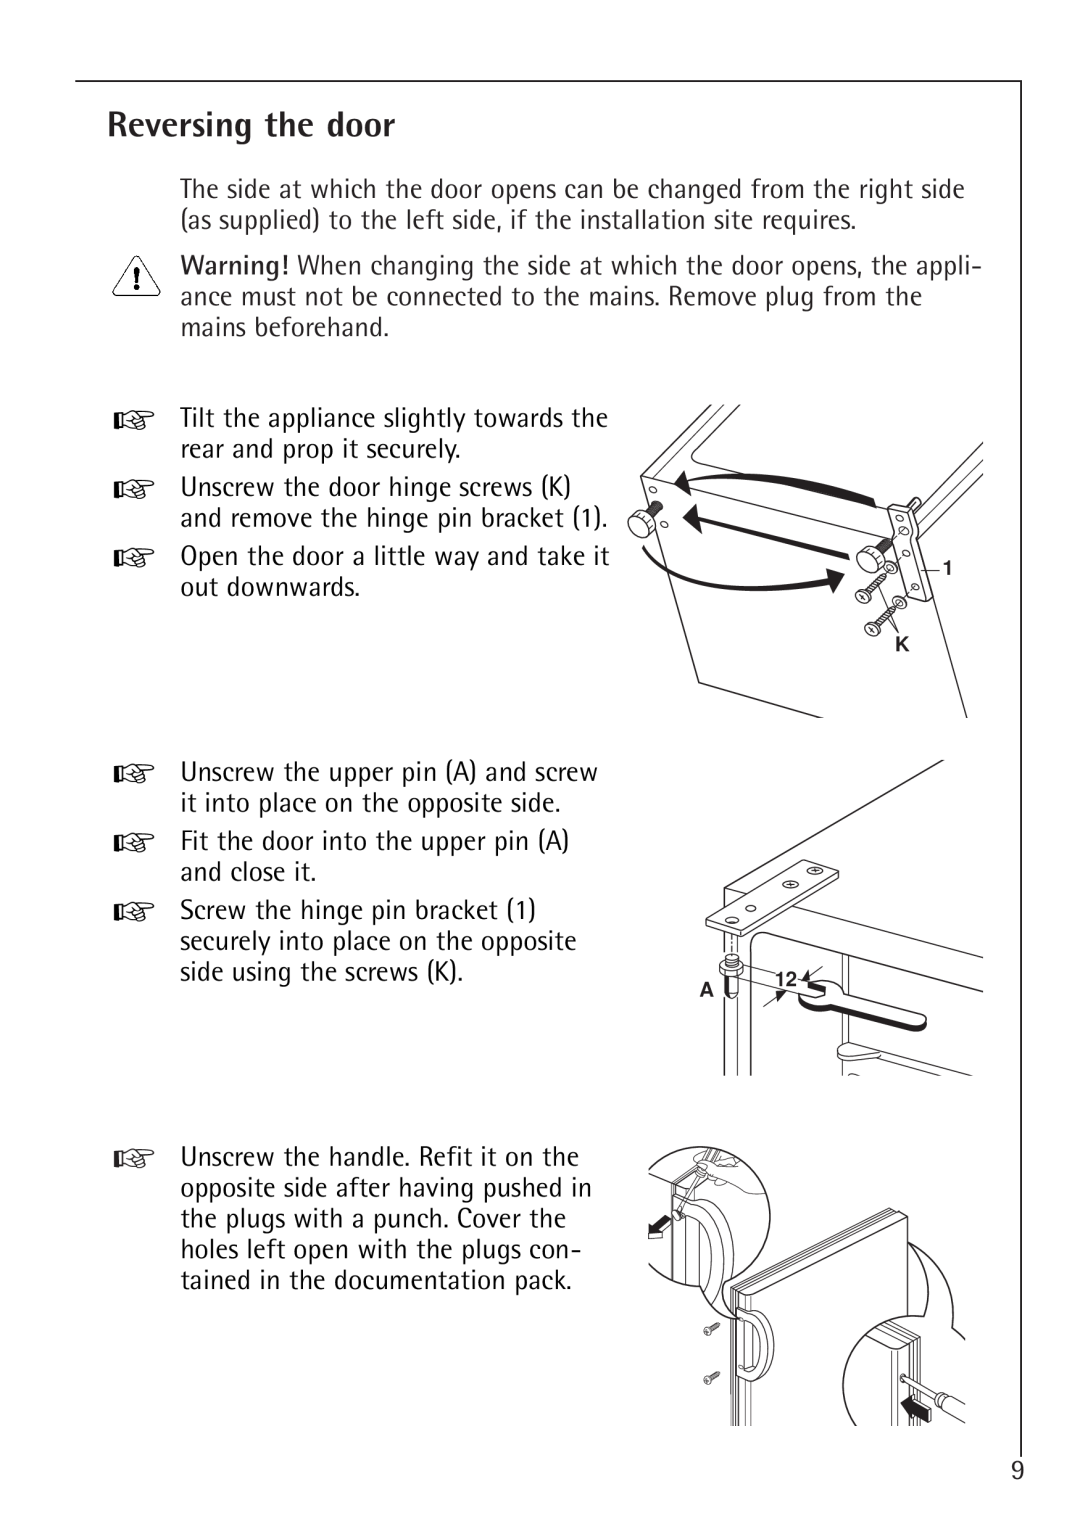 AEG 1450-7 TK manual Reversing the door 